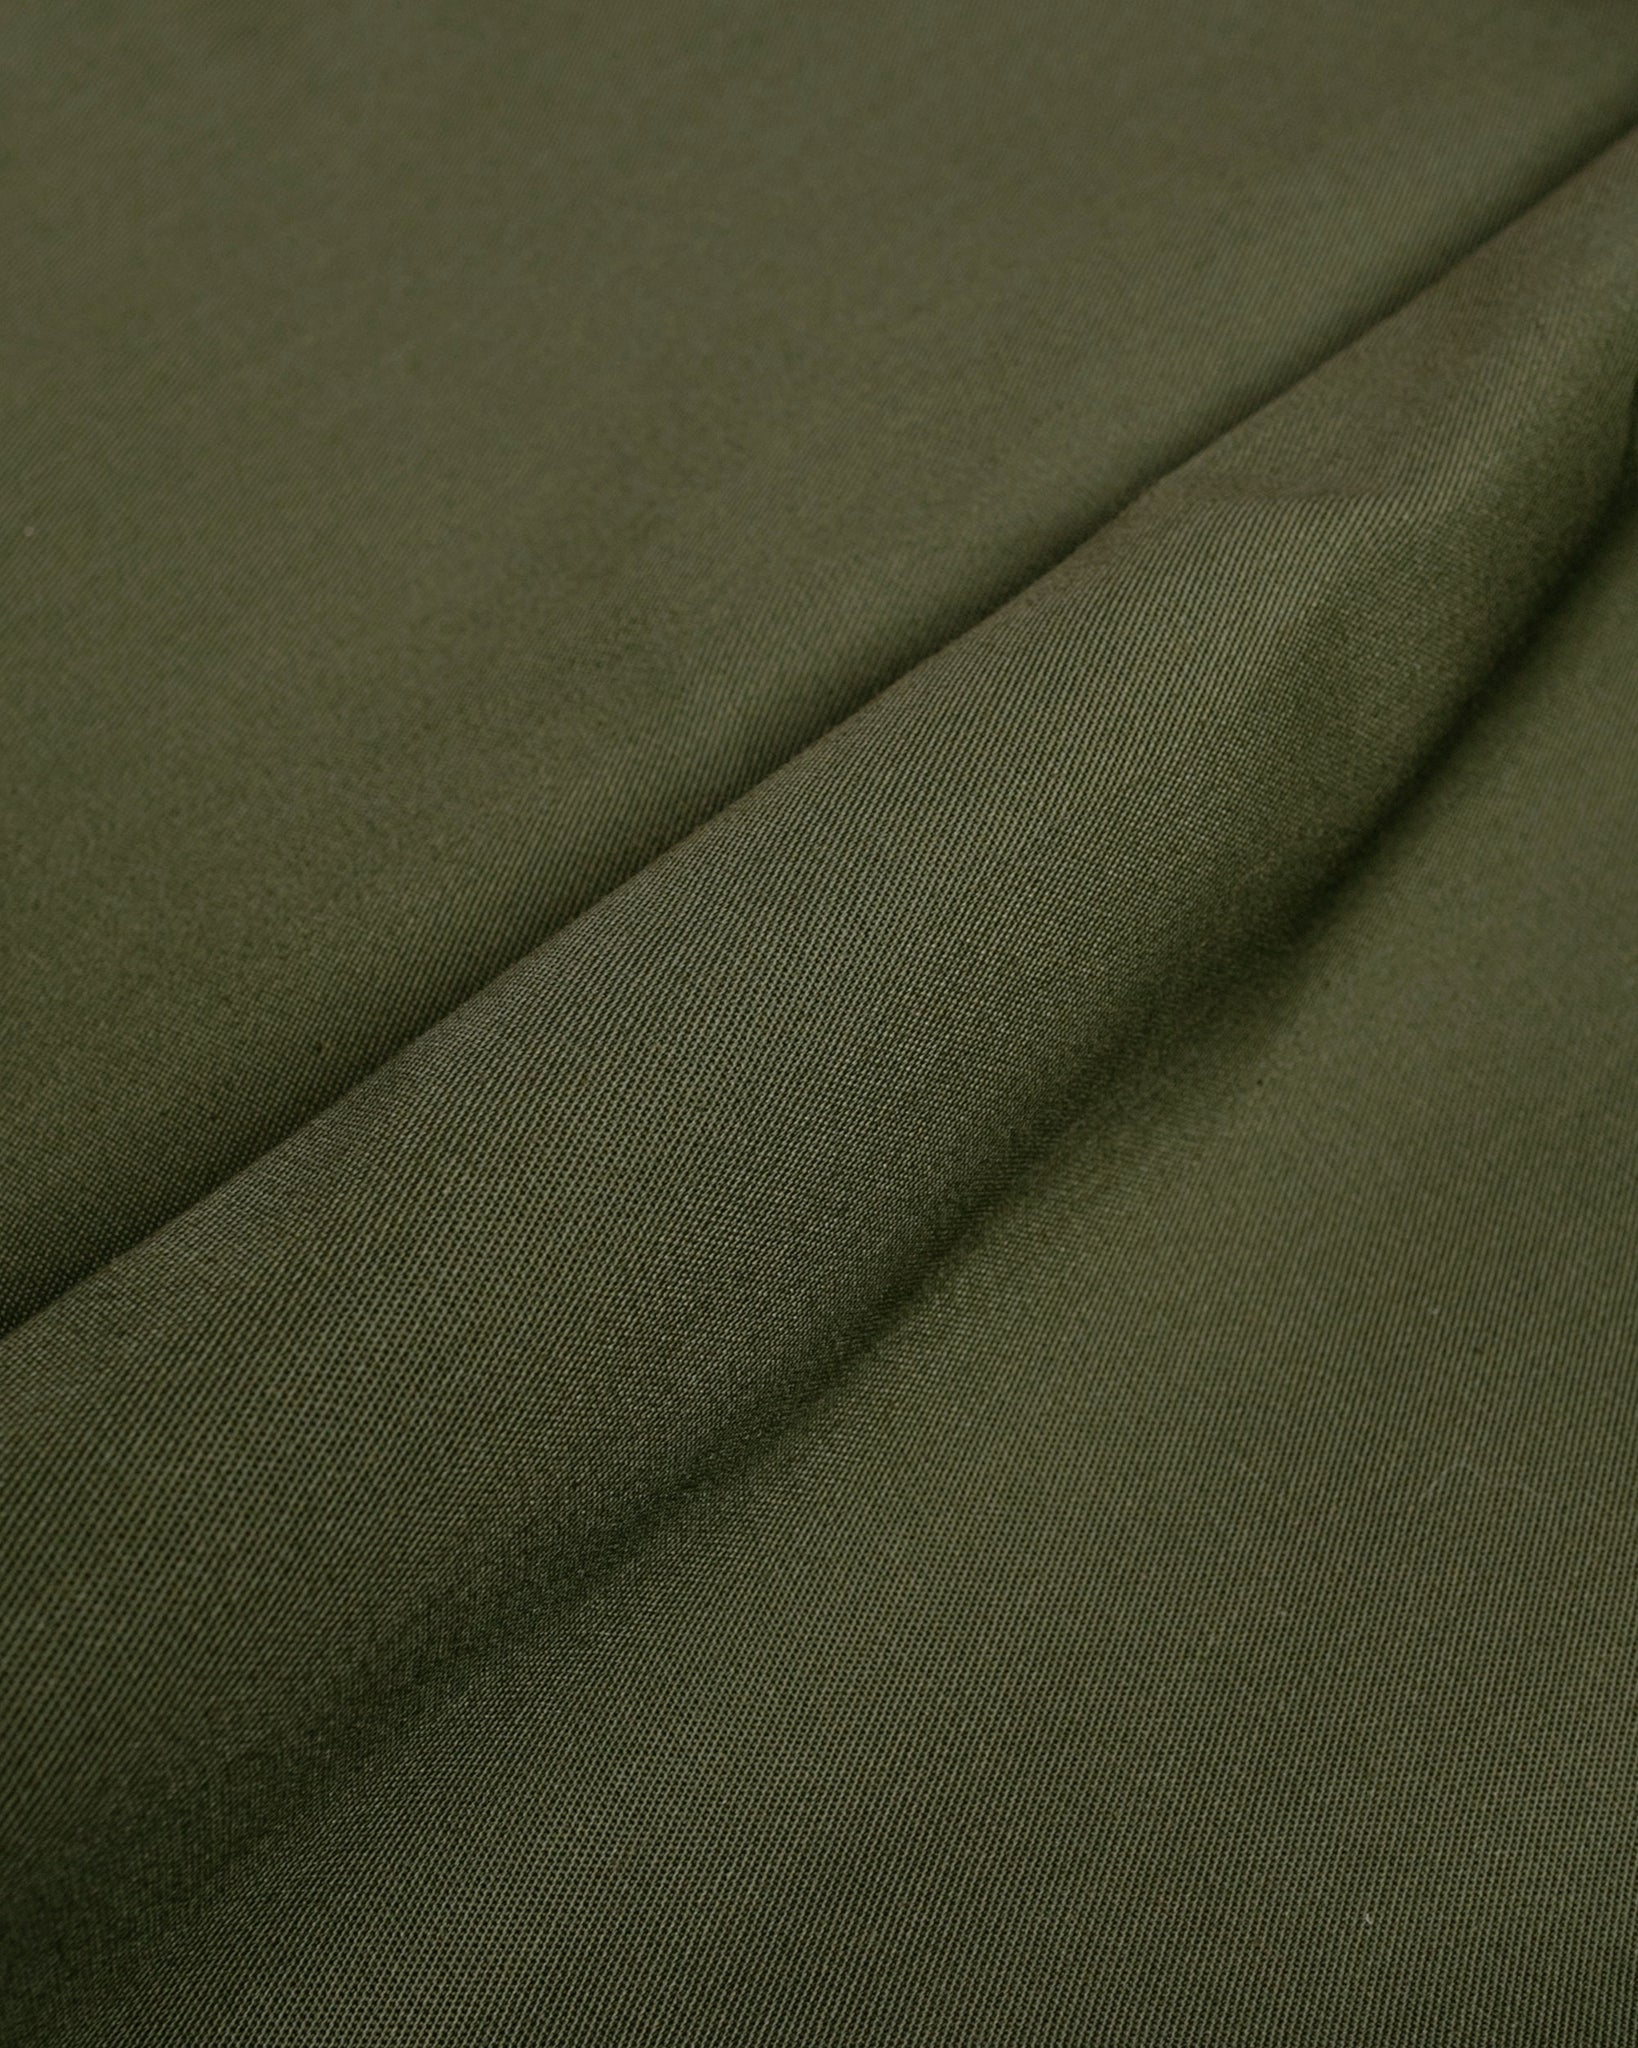 Rosa Rugosa Ranger Pant Olive Drab fabric